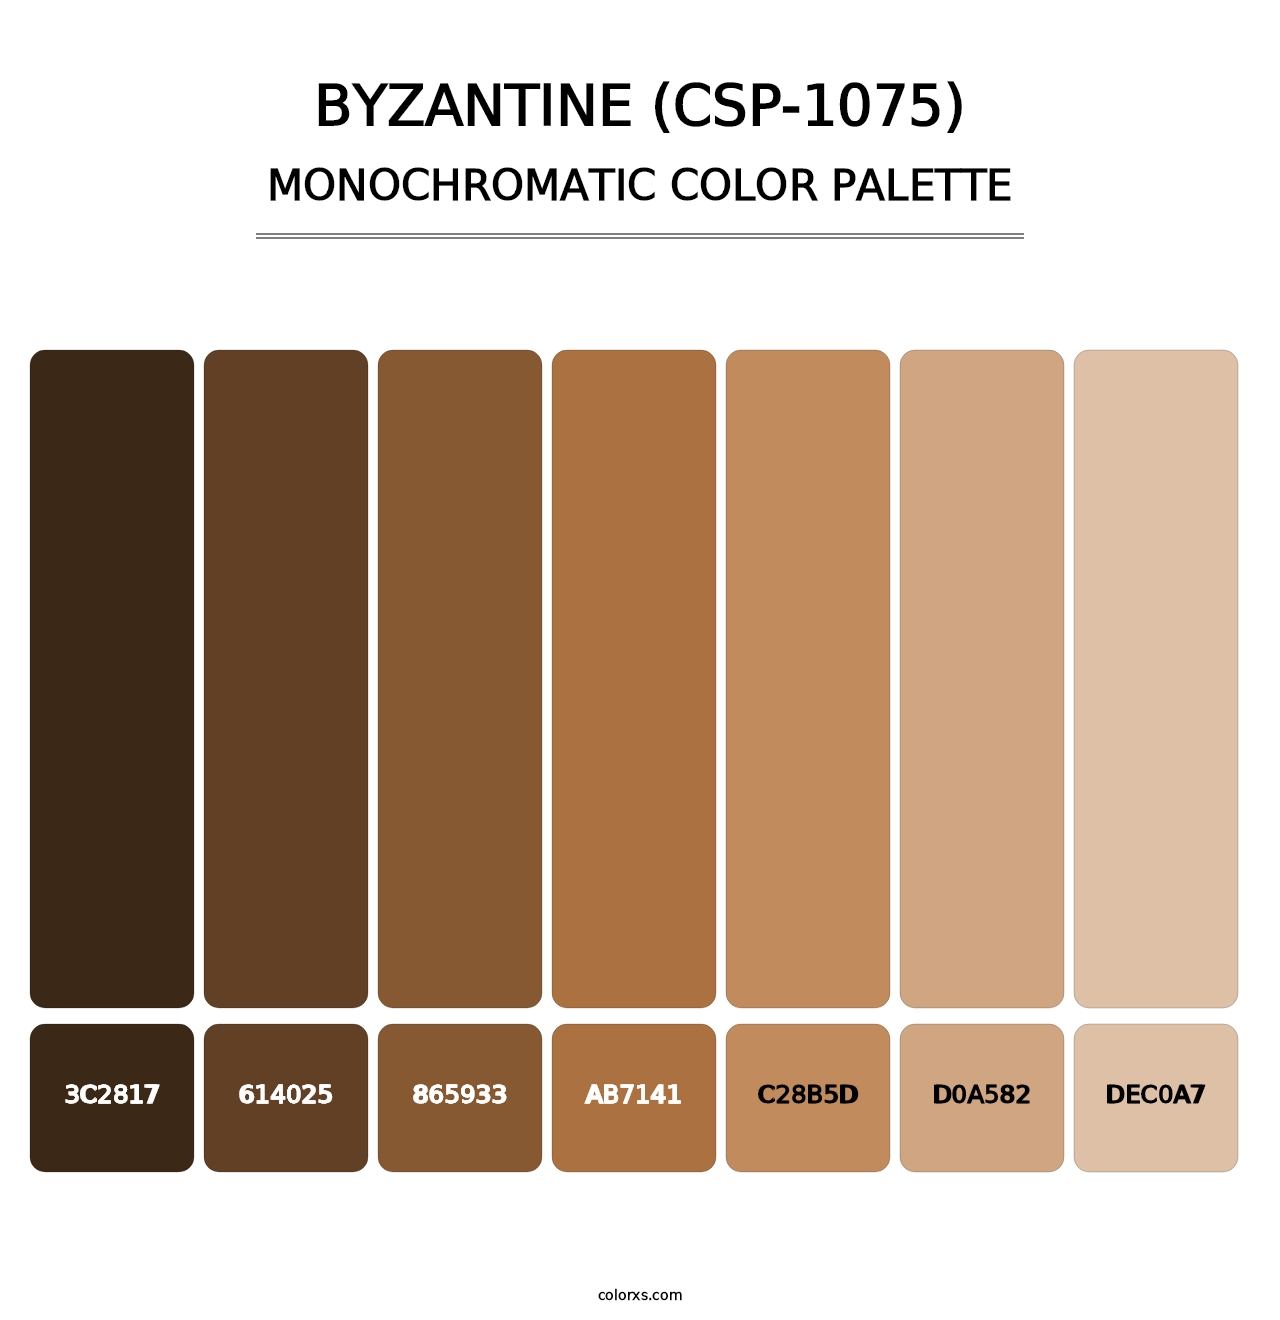 Byzantine (CSP-1075) - Monochromatic Color Palette